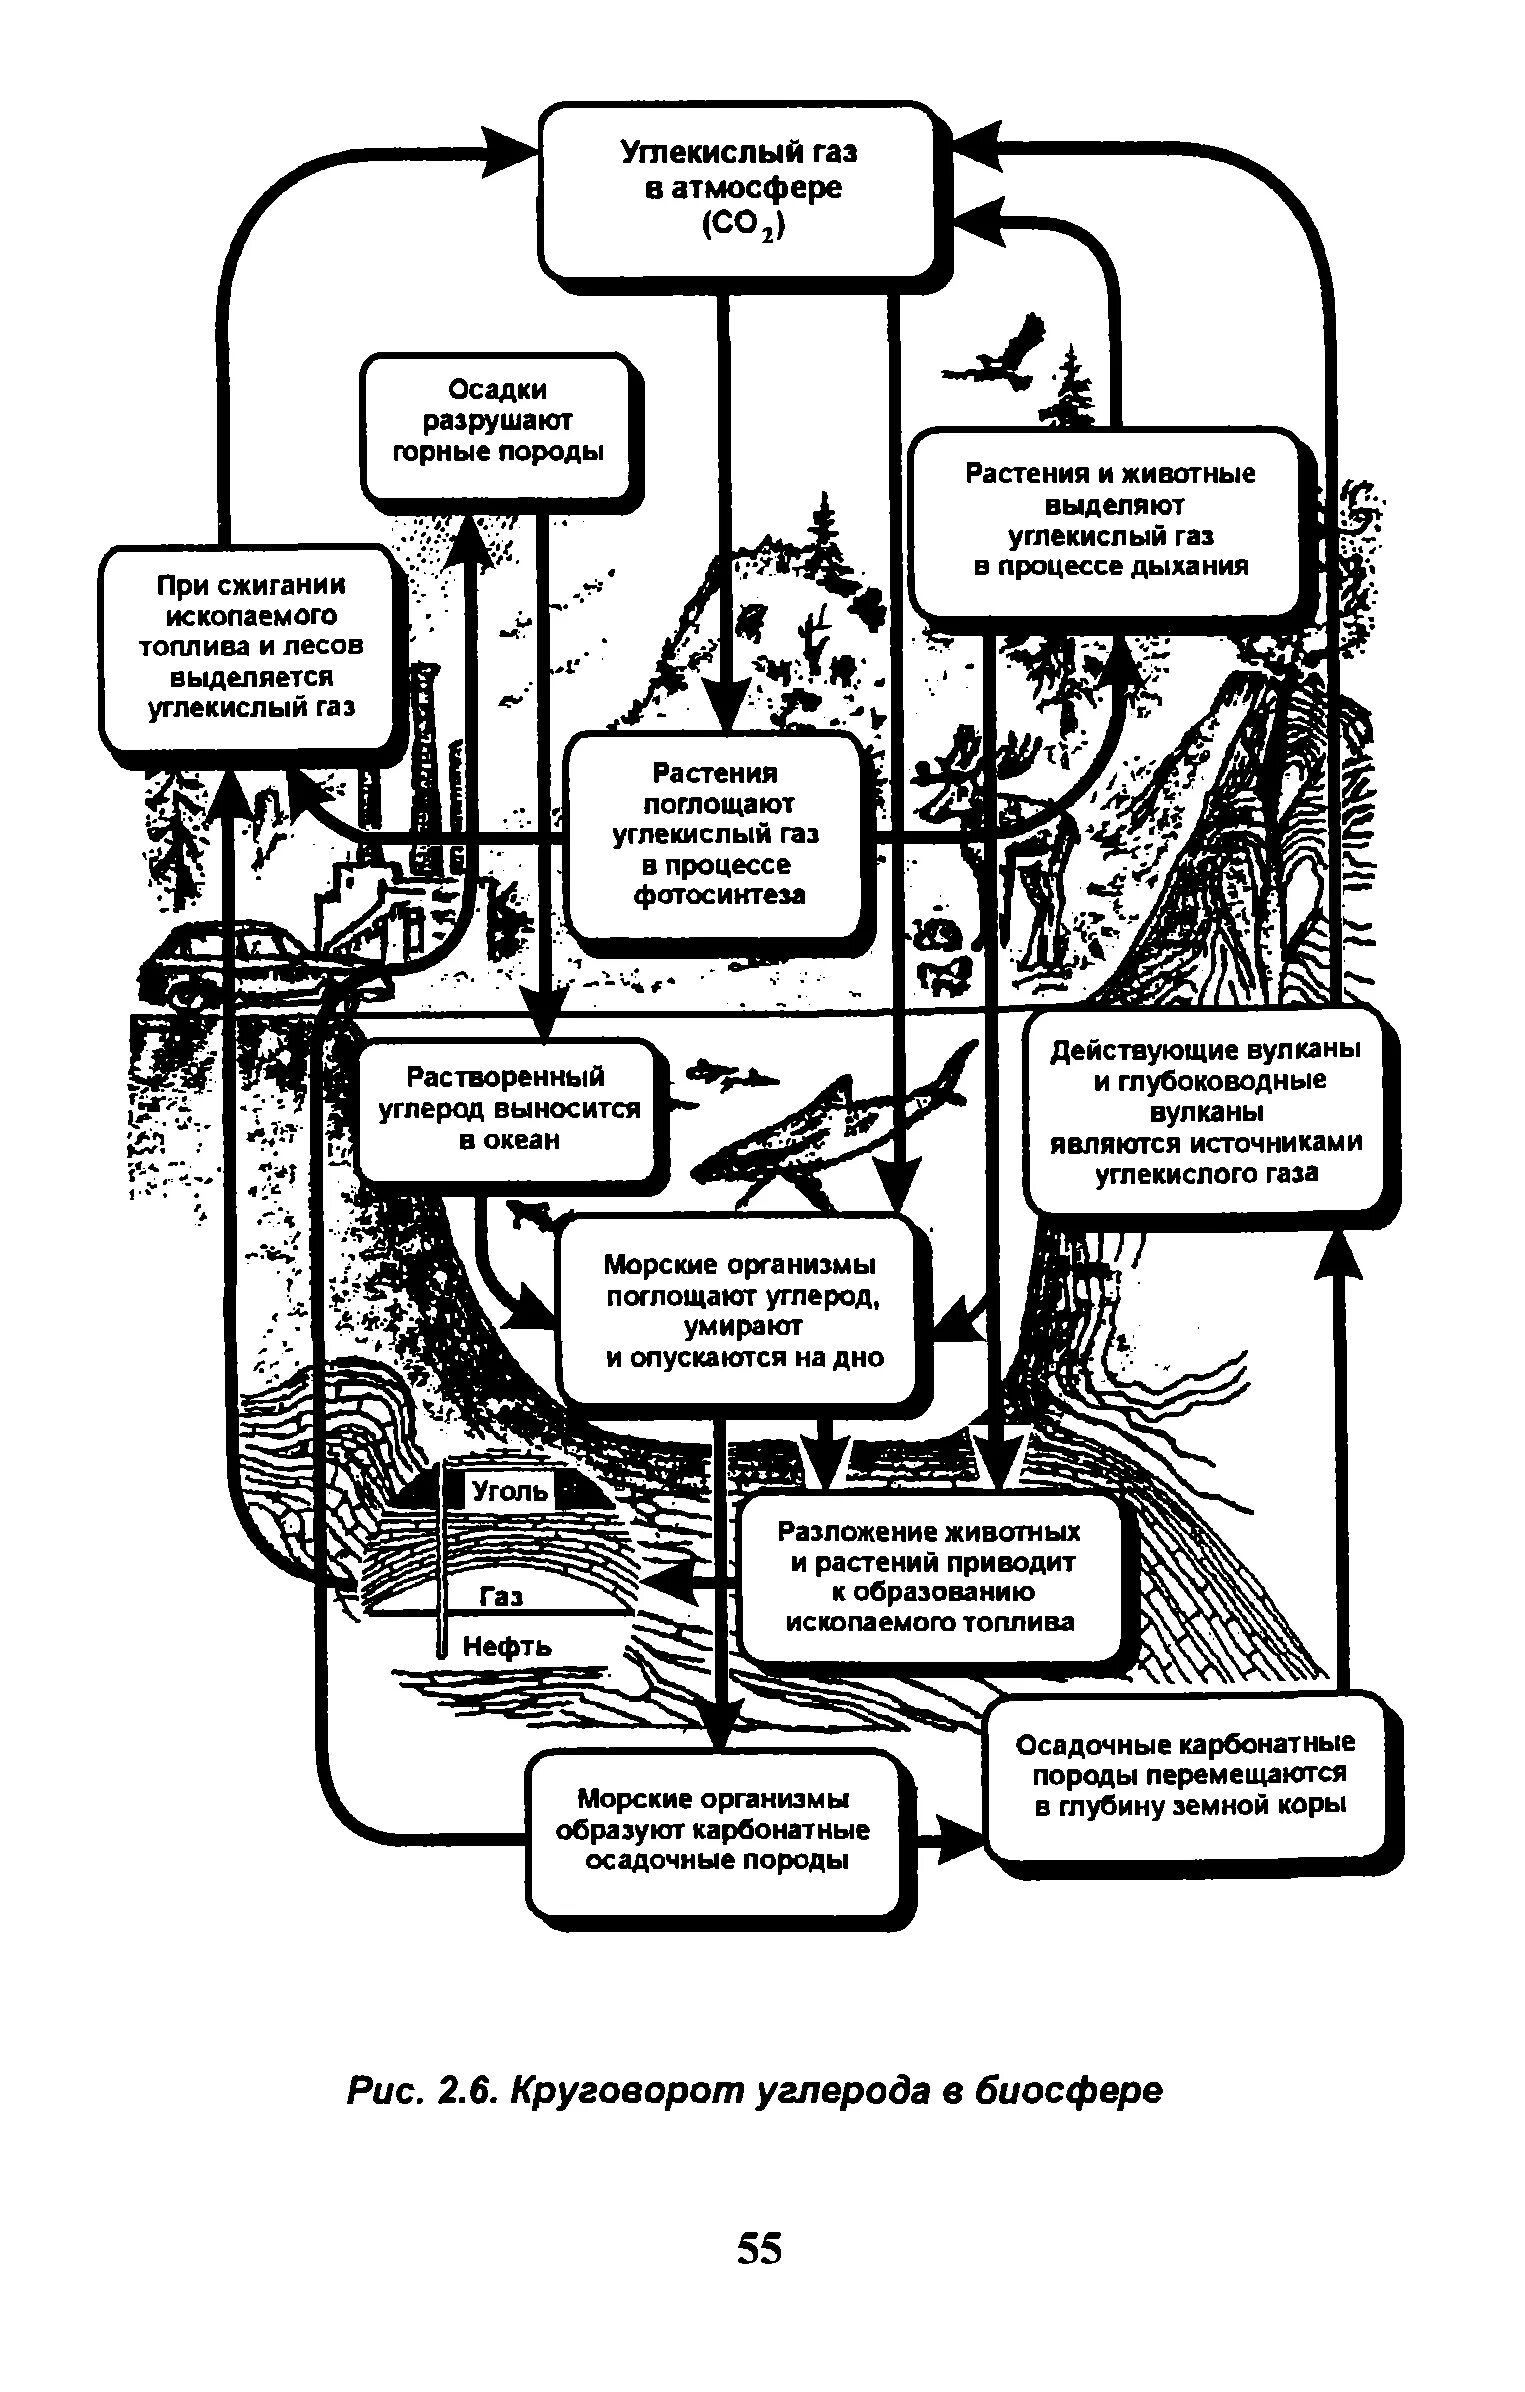 Упрощенная схема круговорота углерода в биосфере. Схема биогеохимического цикла углерода в биосфере. Круговорот углерода в биосфере. Круговорот углерода в биосфере схема.